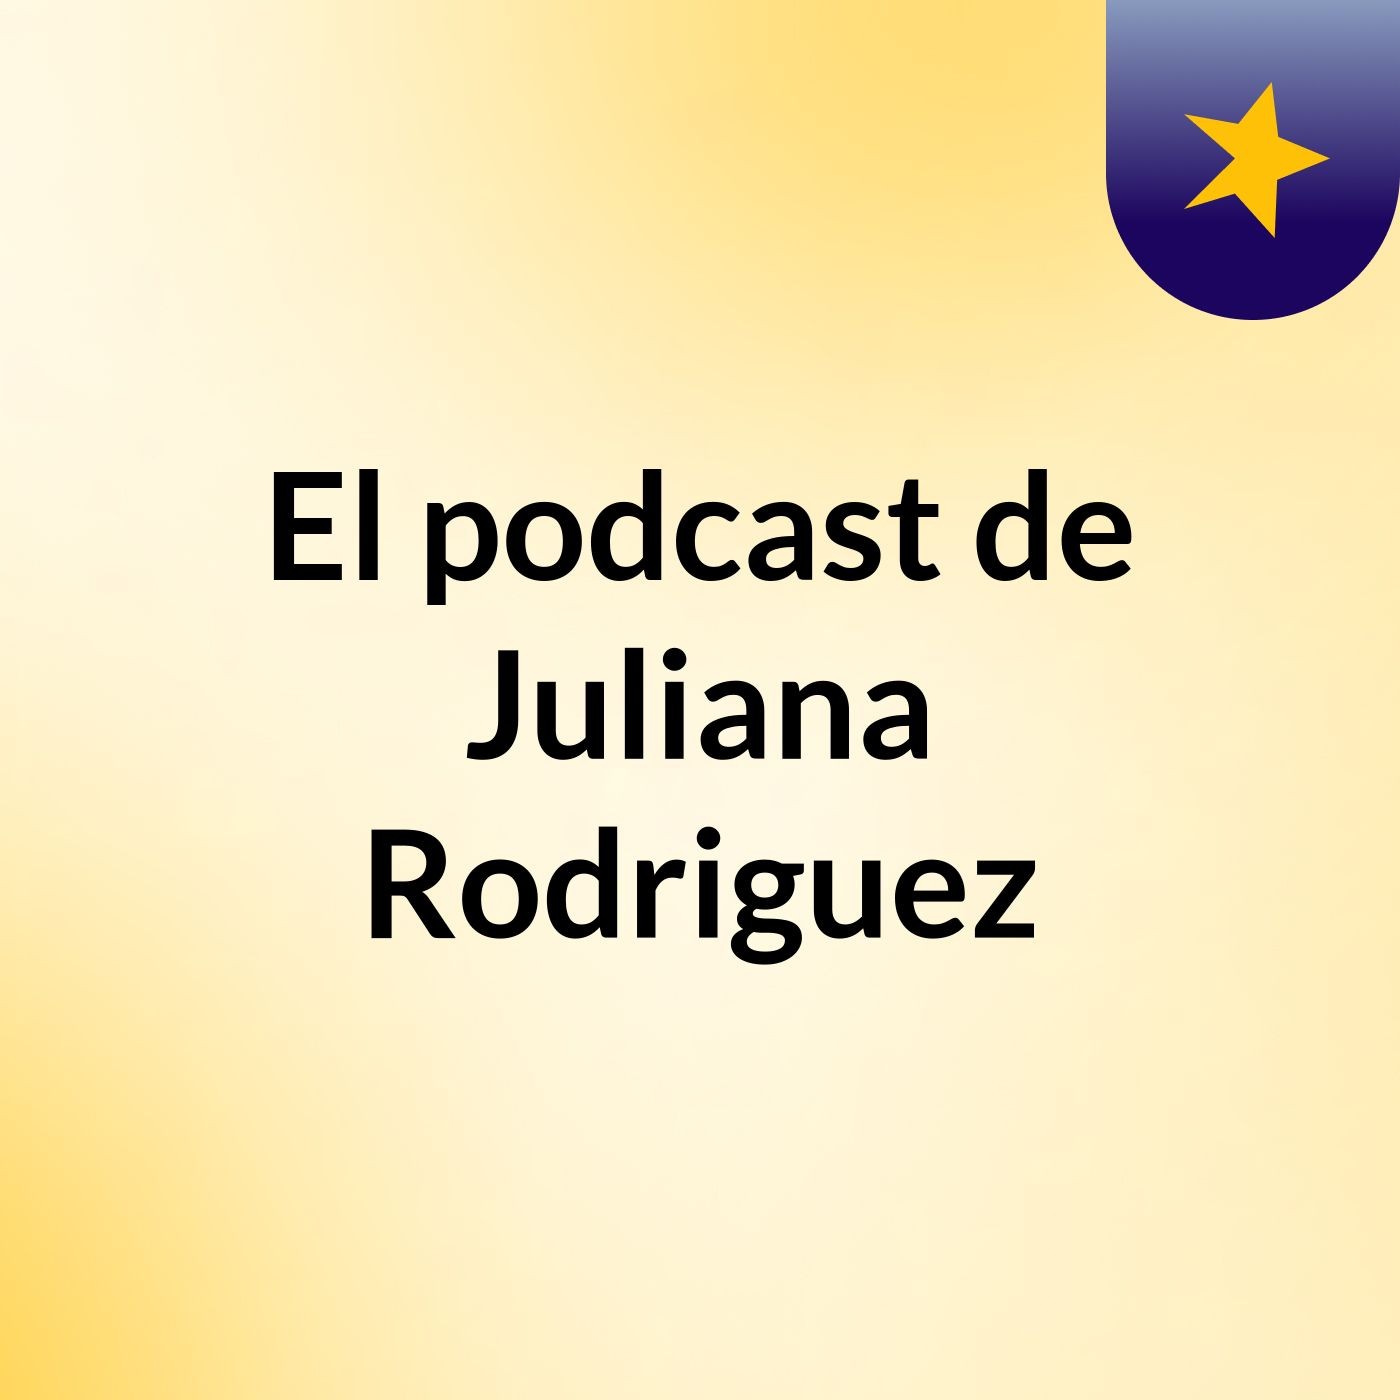 Episodio 3 - El podcast de Juliana Rodriguez